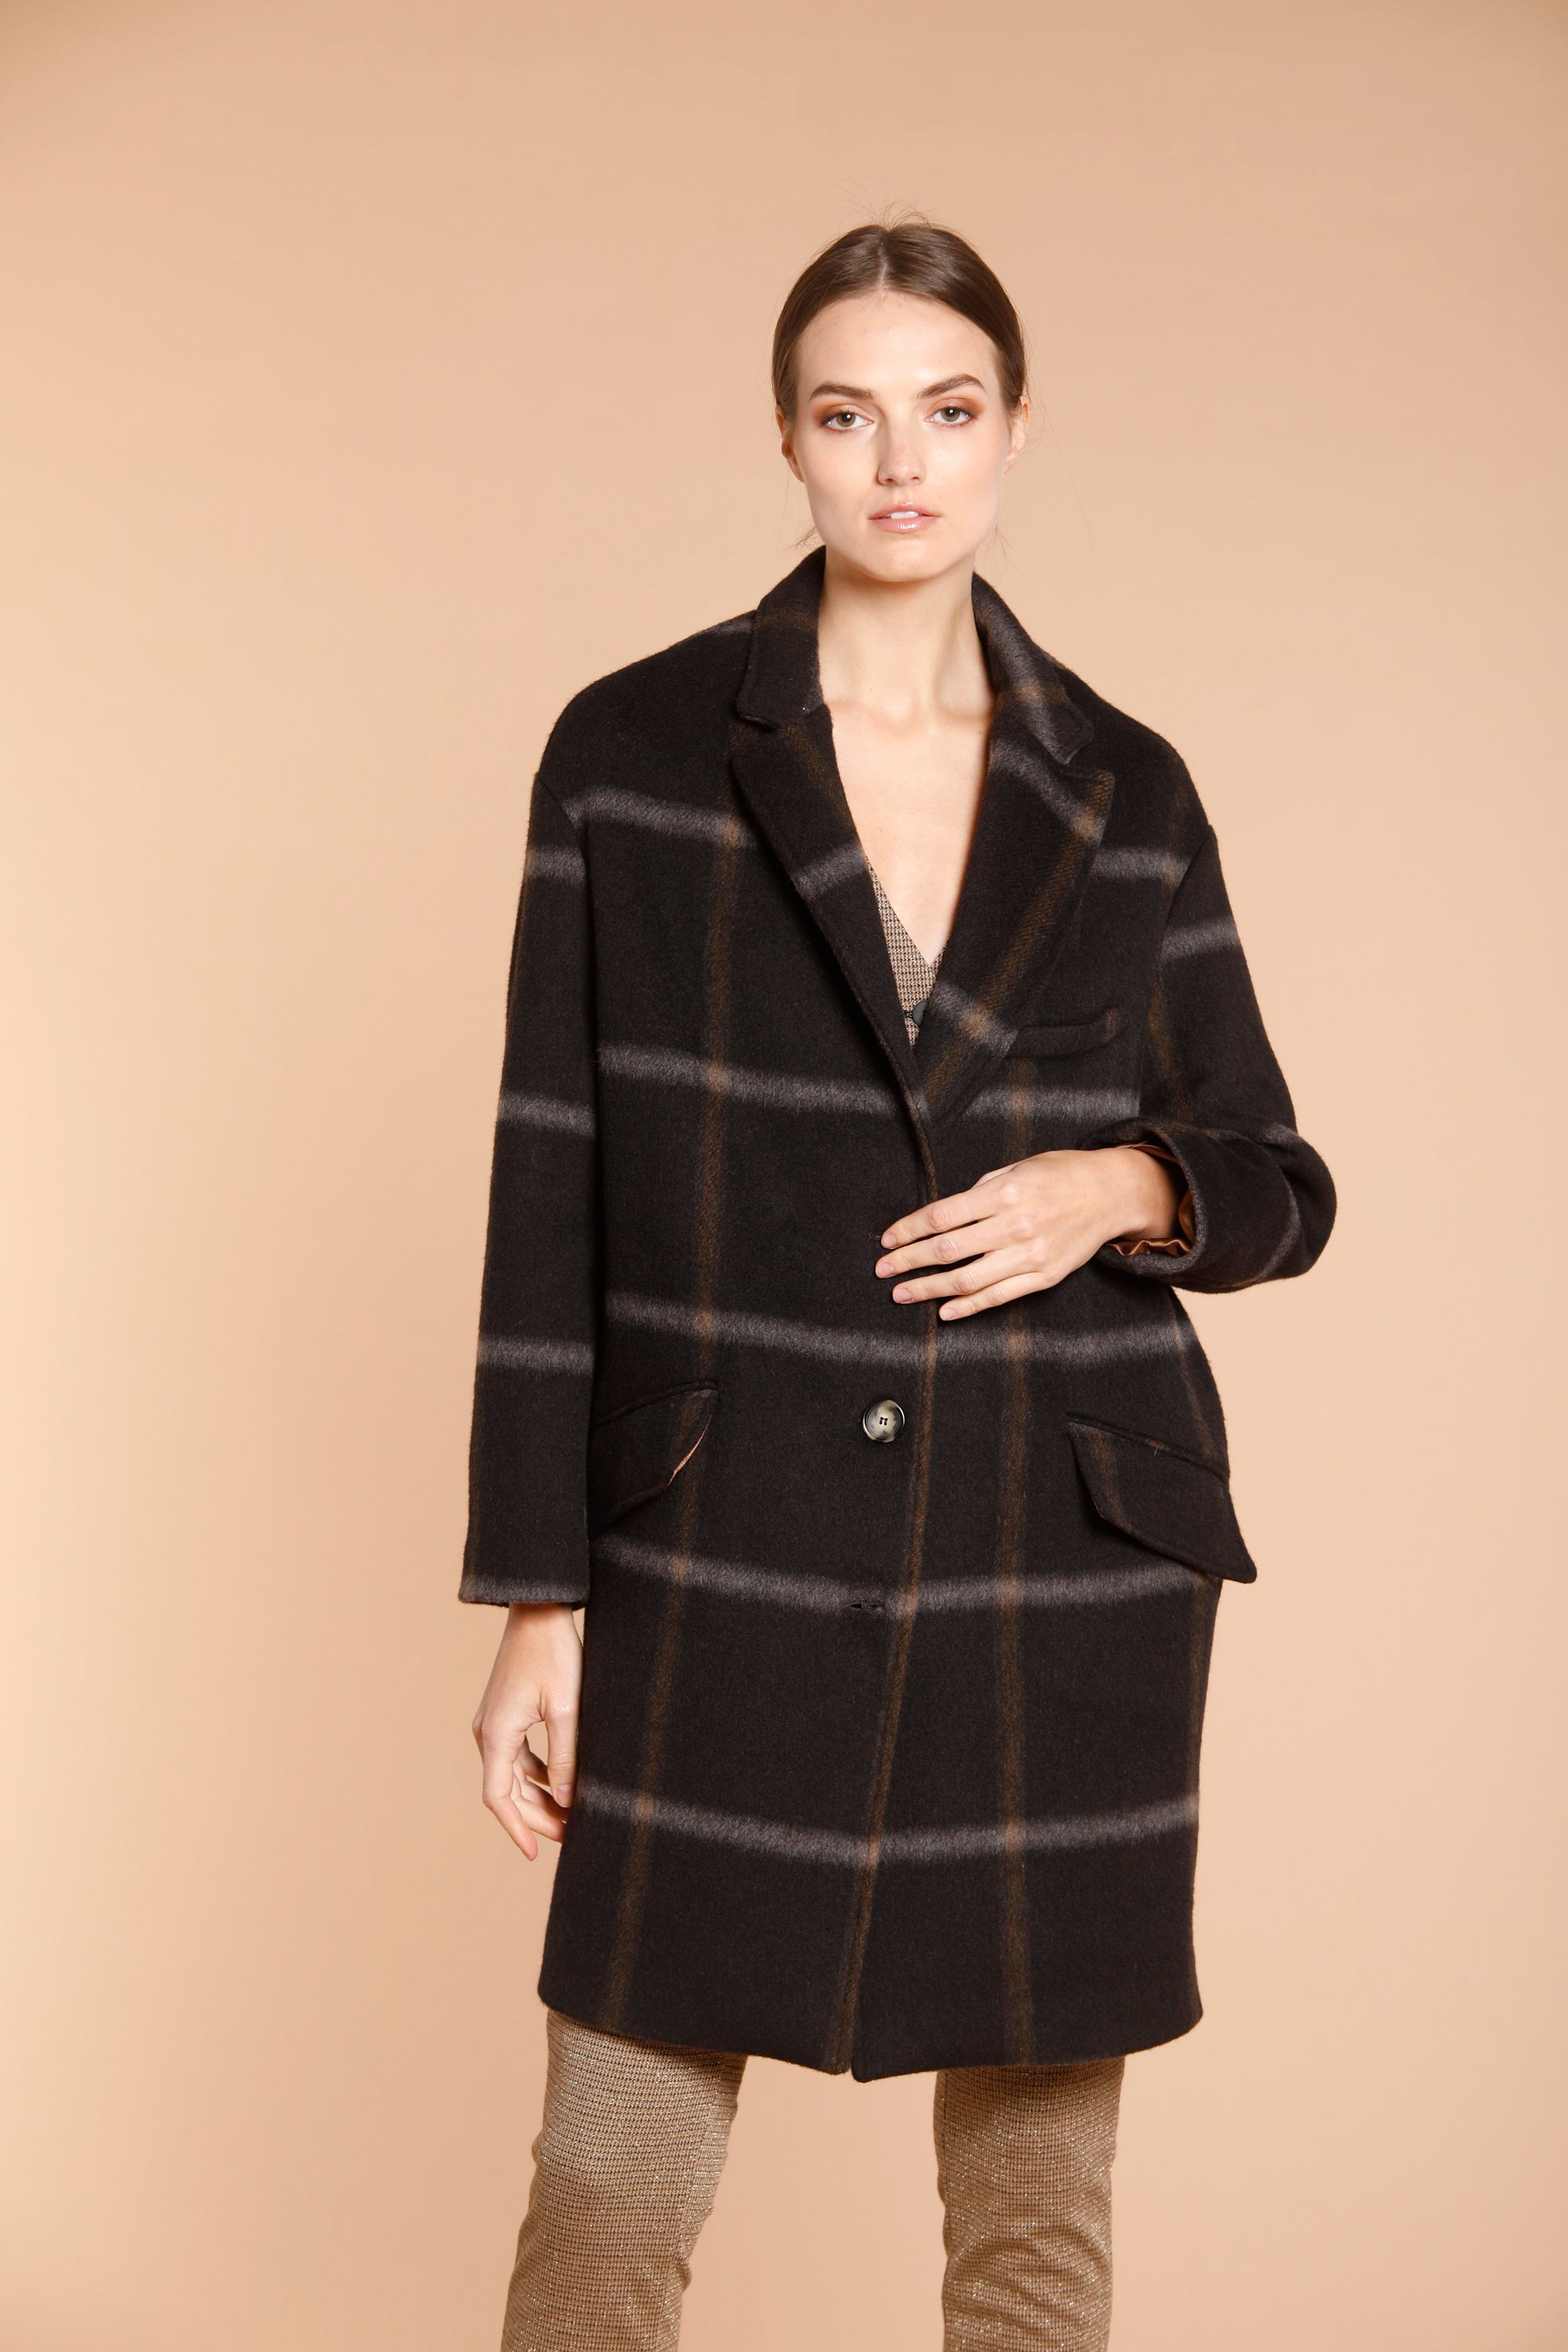 Image 5 de manteau femme en laine modèle Isabel Coat couleur marron motif carré de Mason's